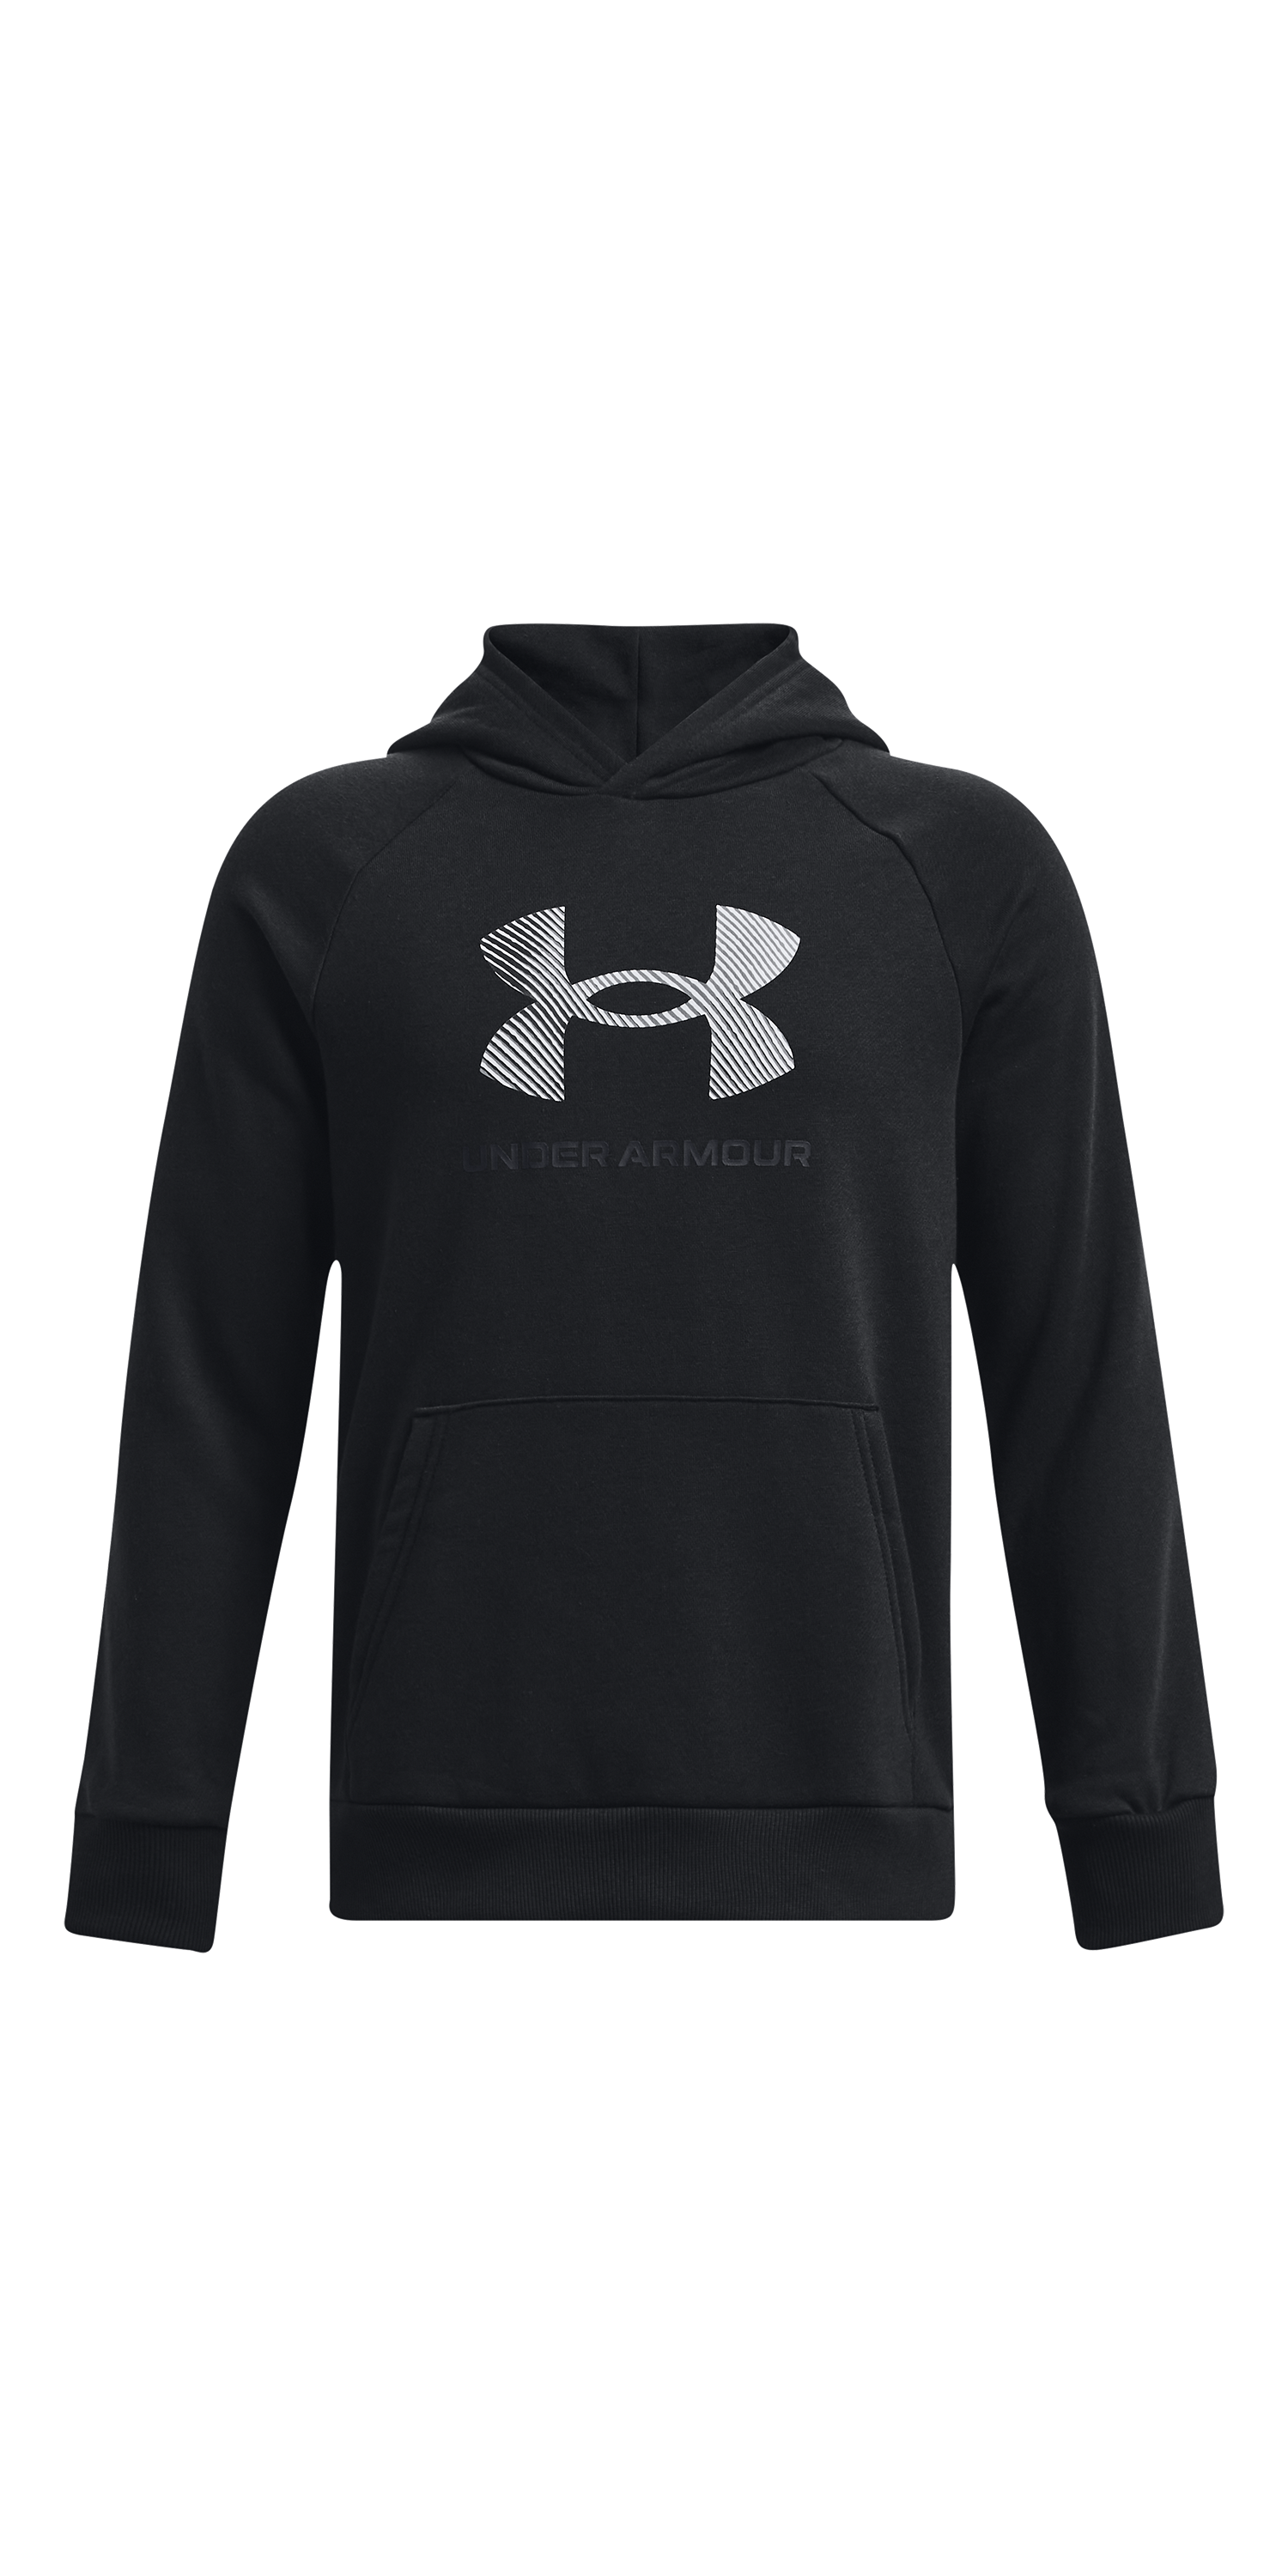 Boys' Tek Gear Warm Tek Hoodie Sweatshirt size M (10-12) - clothing &  accessories - by owner - apparel sale - craigslist